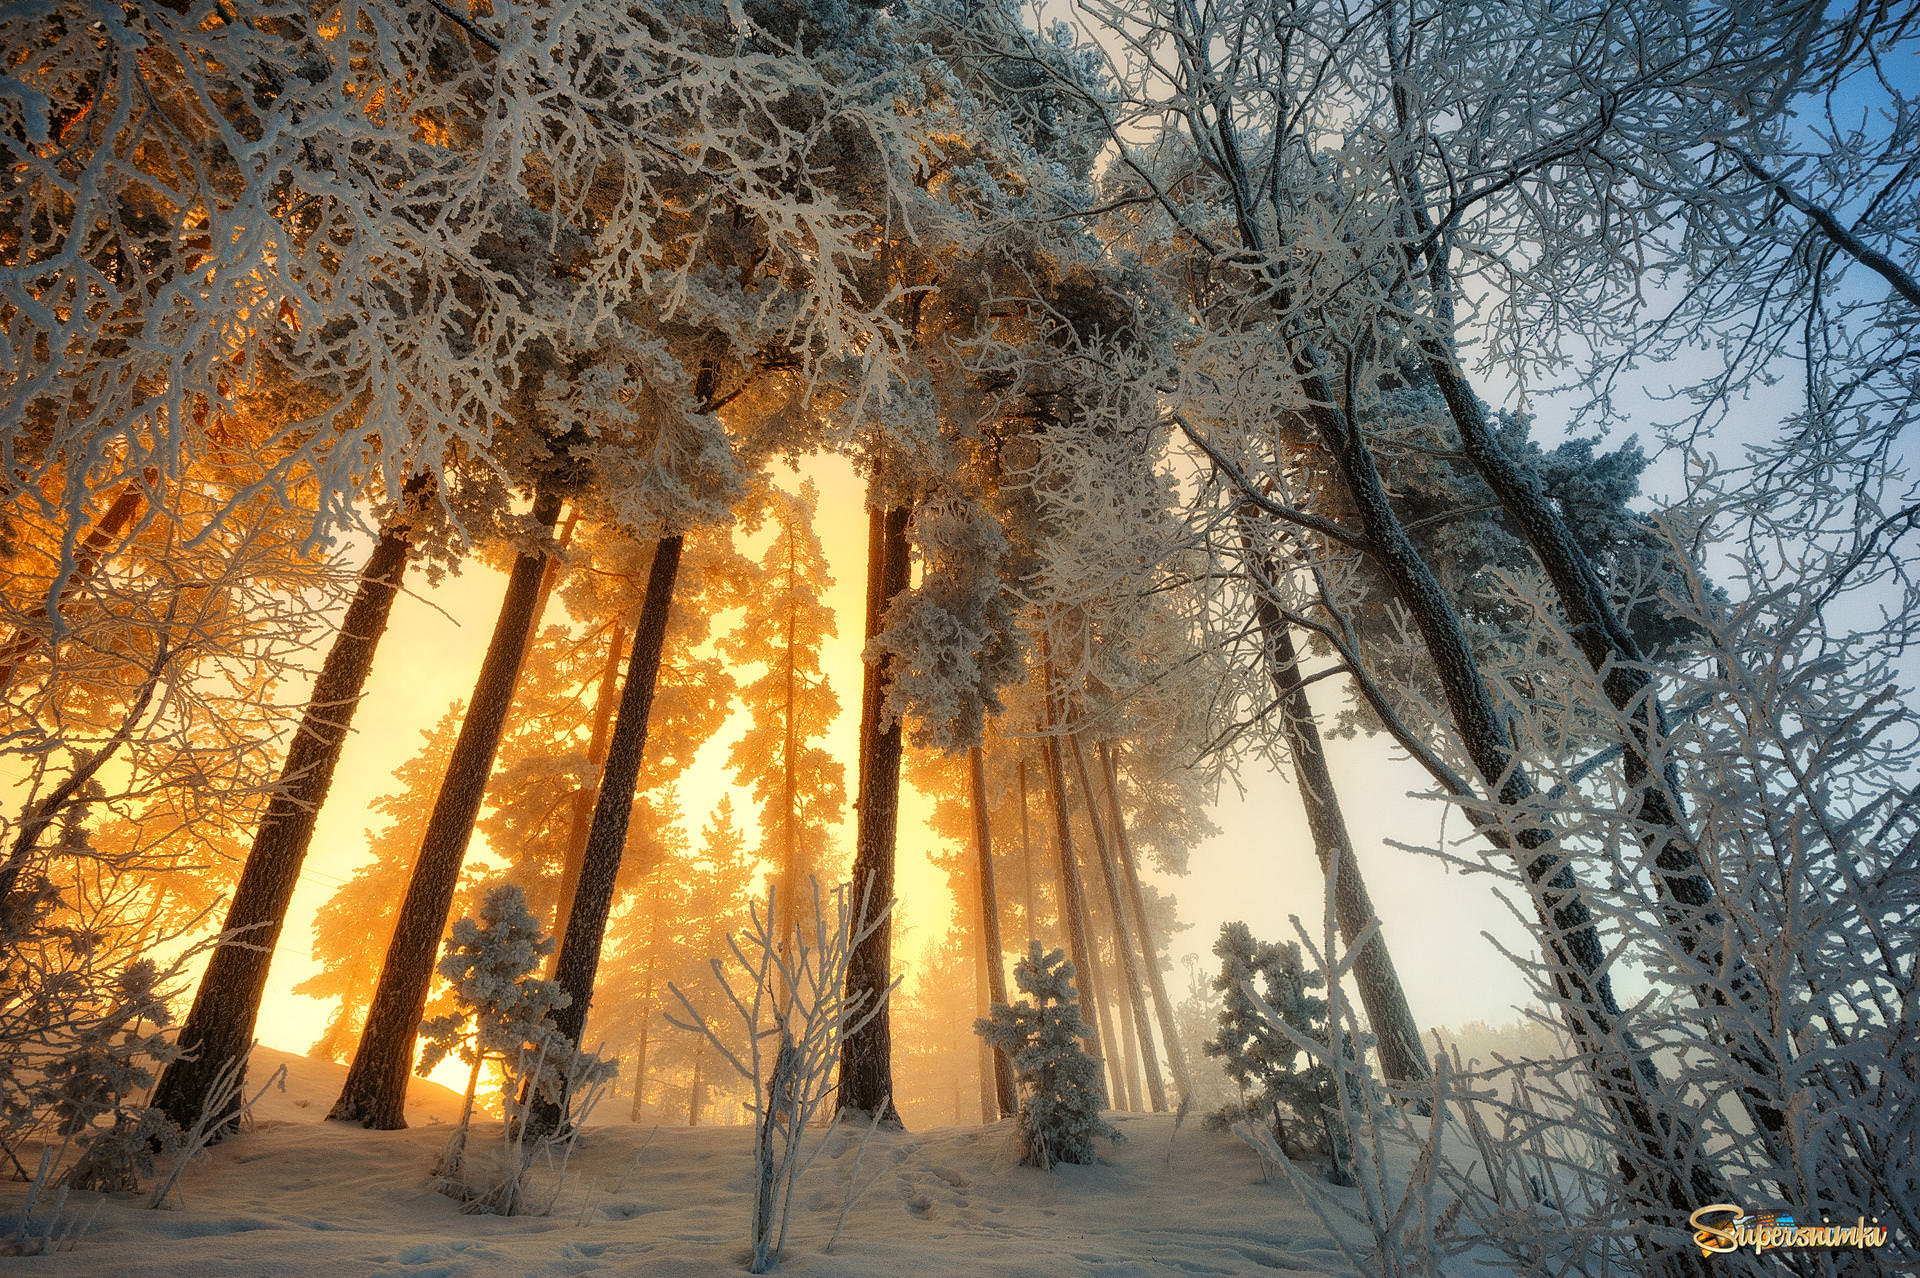 Фф и в морозном лесу я навеки. Зима в лесу. Морозное утро в лесу. Утро в зимнем лесу. Рассвет в зимнем лесу.